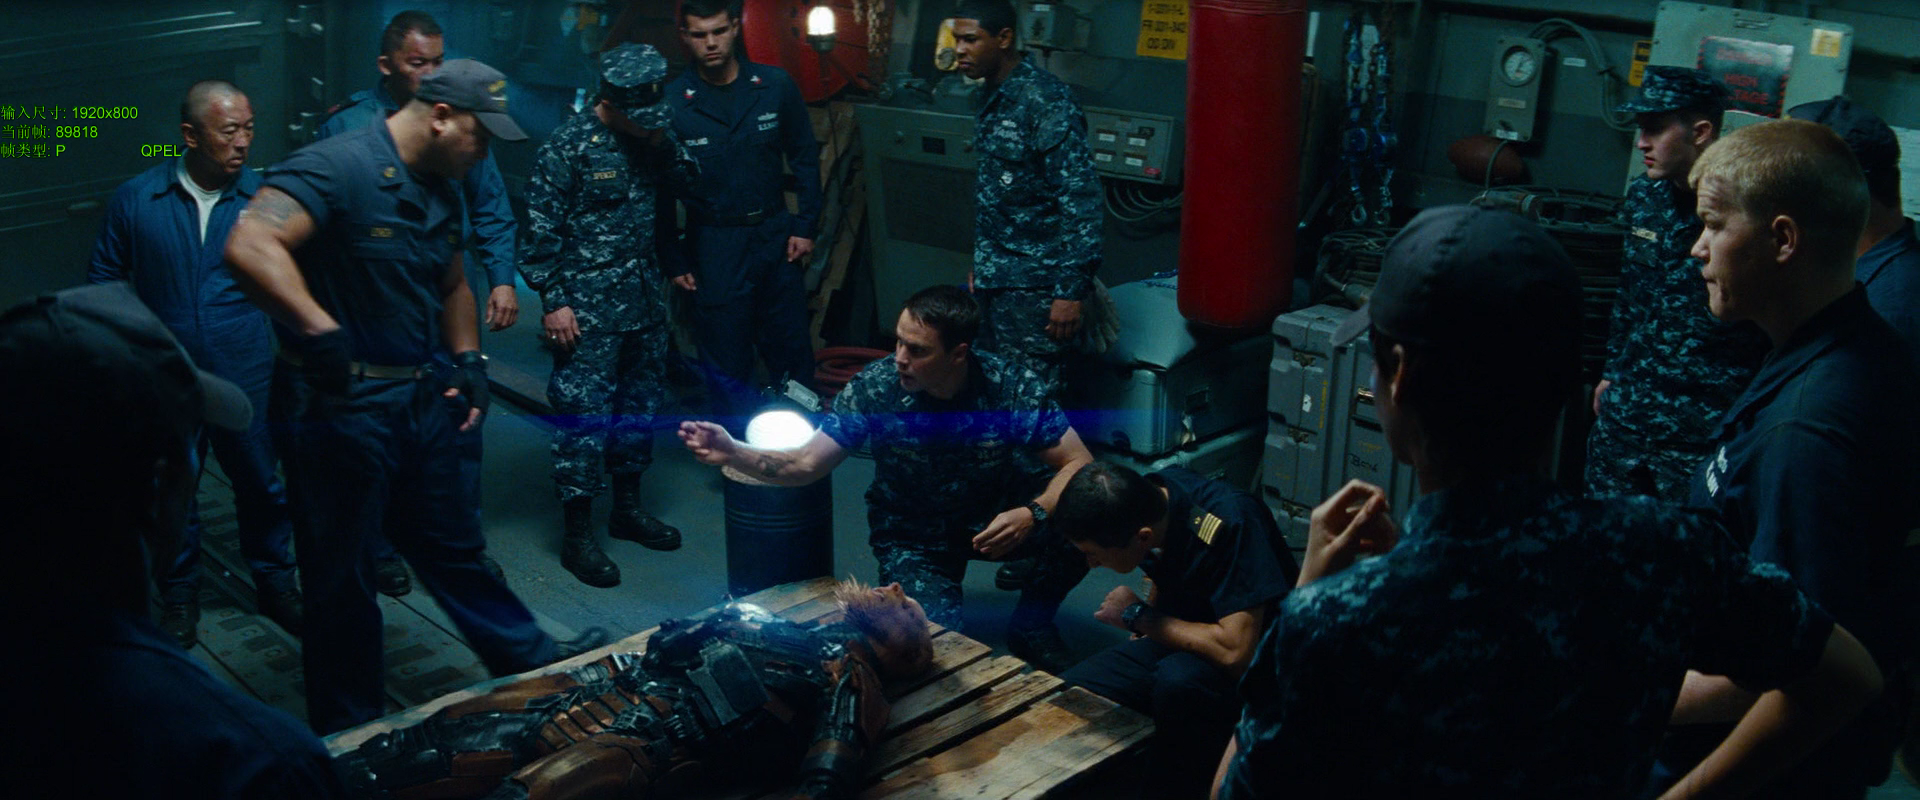 Инопланетяне из фильма морской бой фото